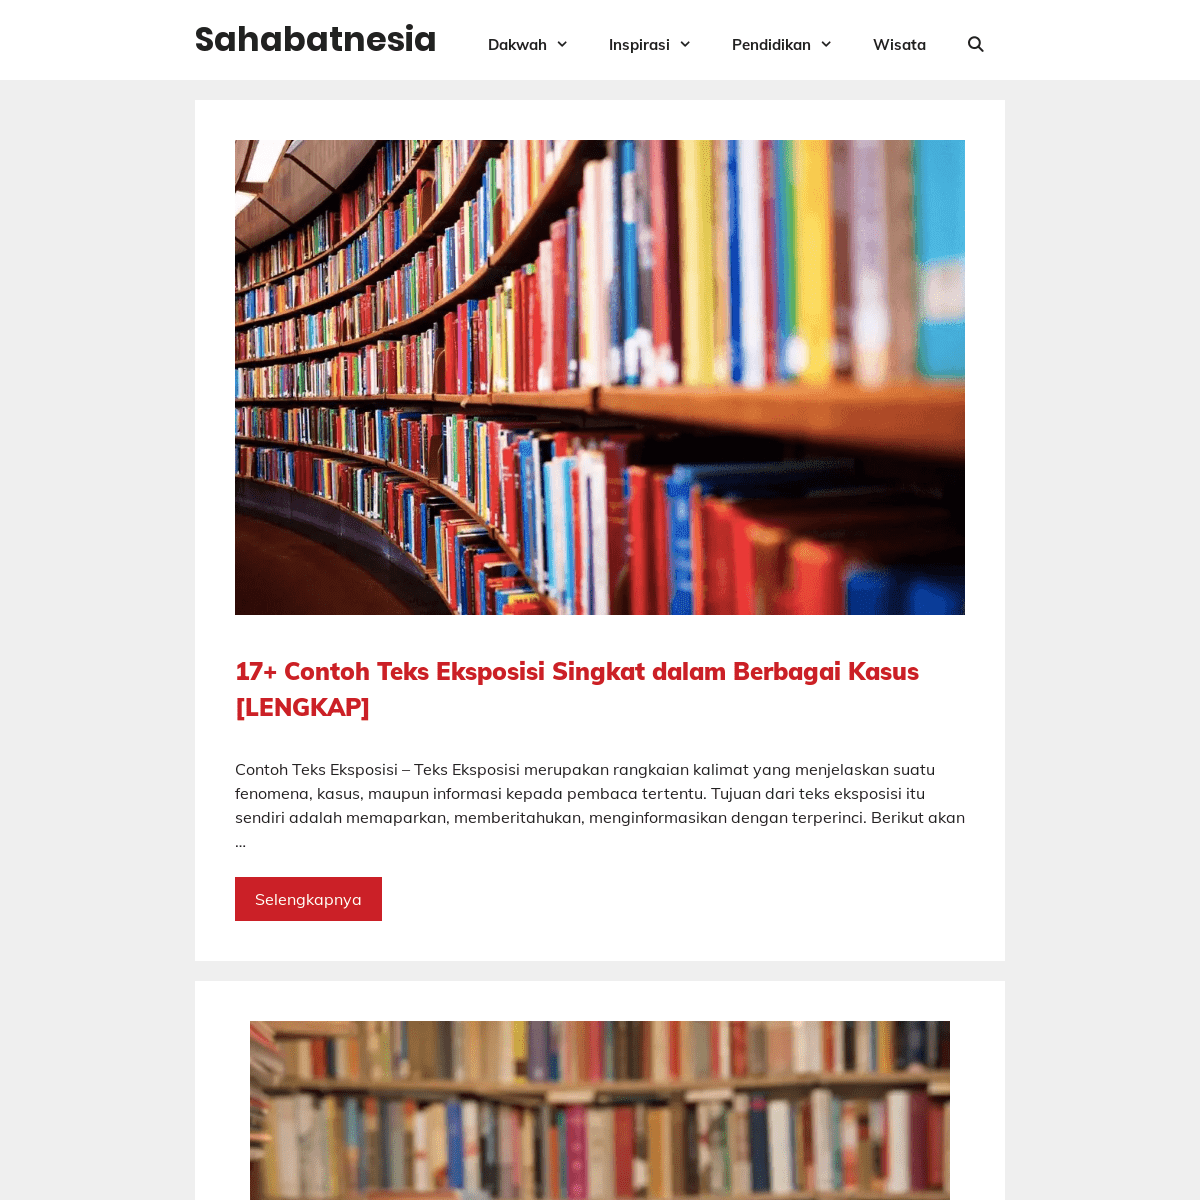 A complete backup of sahabatnesia.com